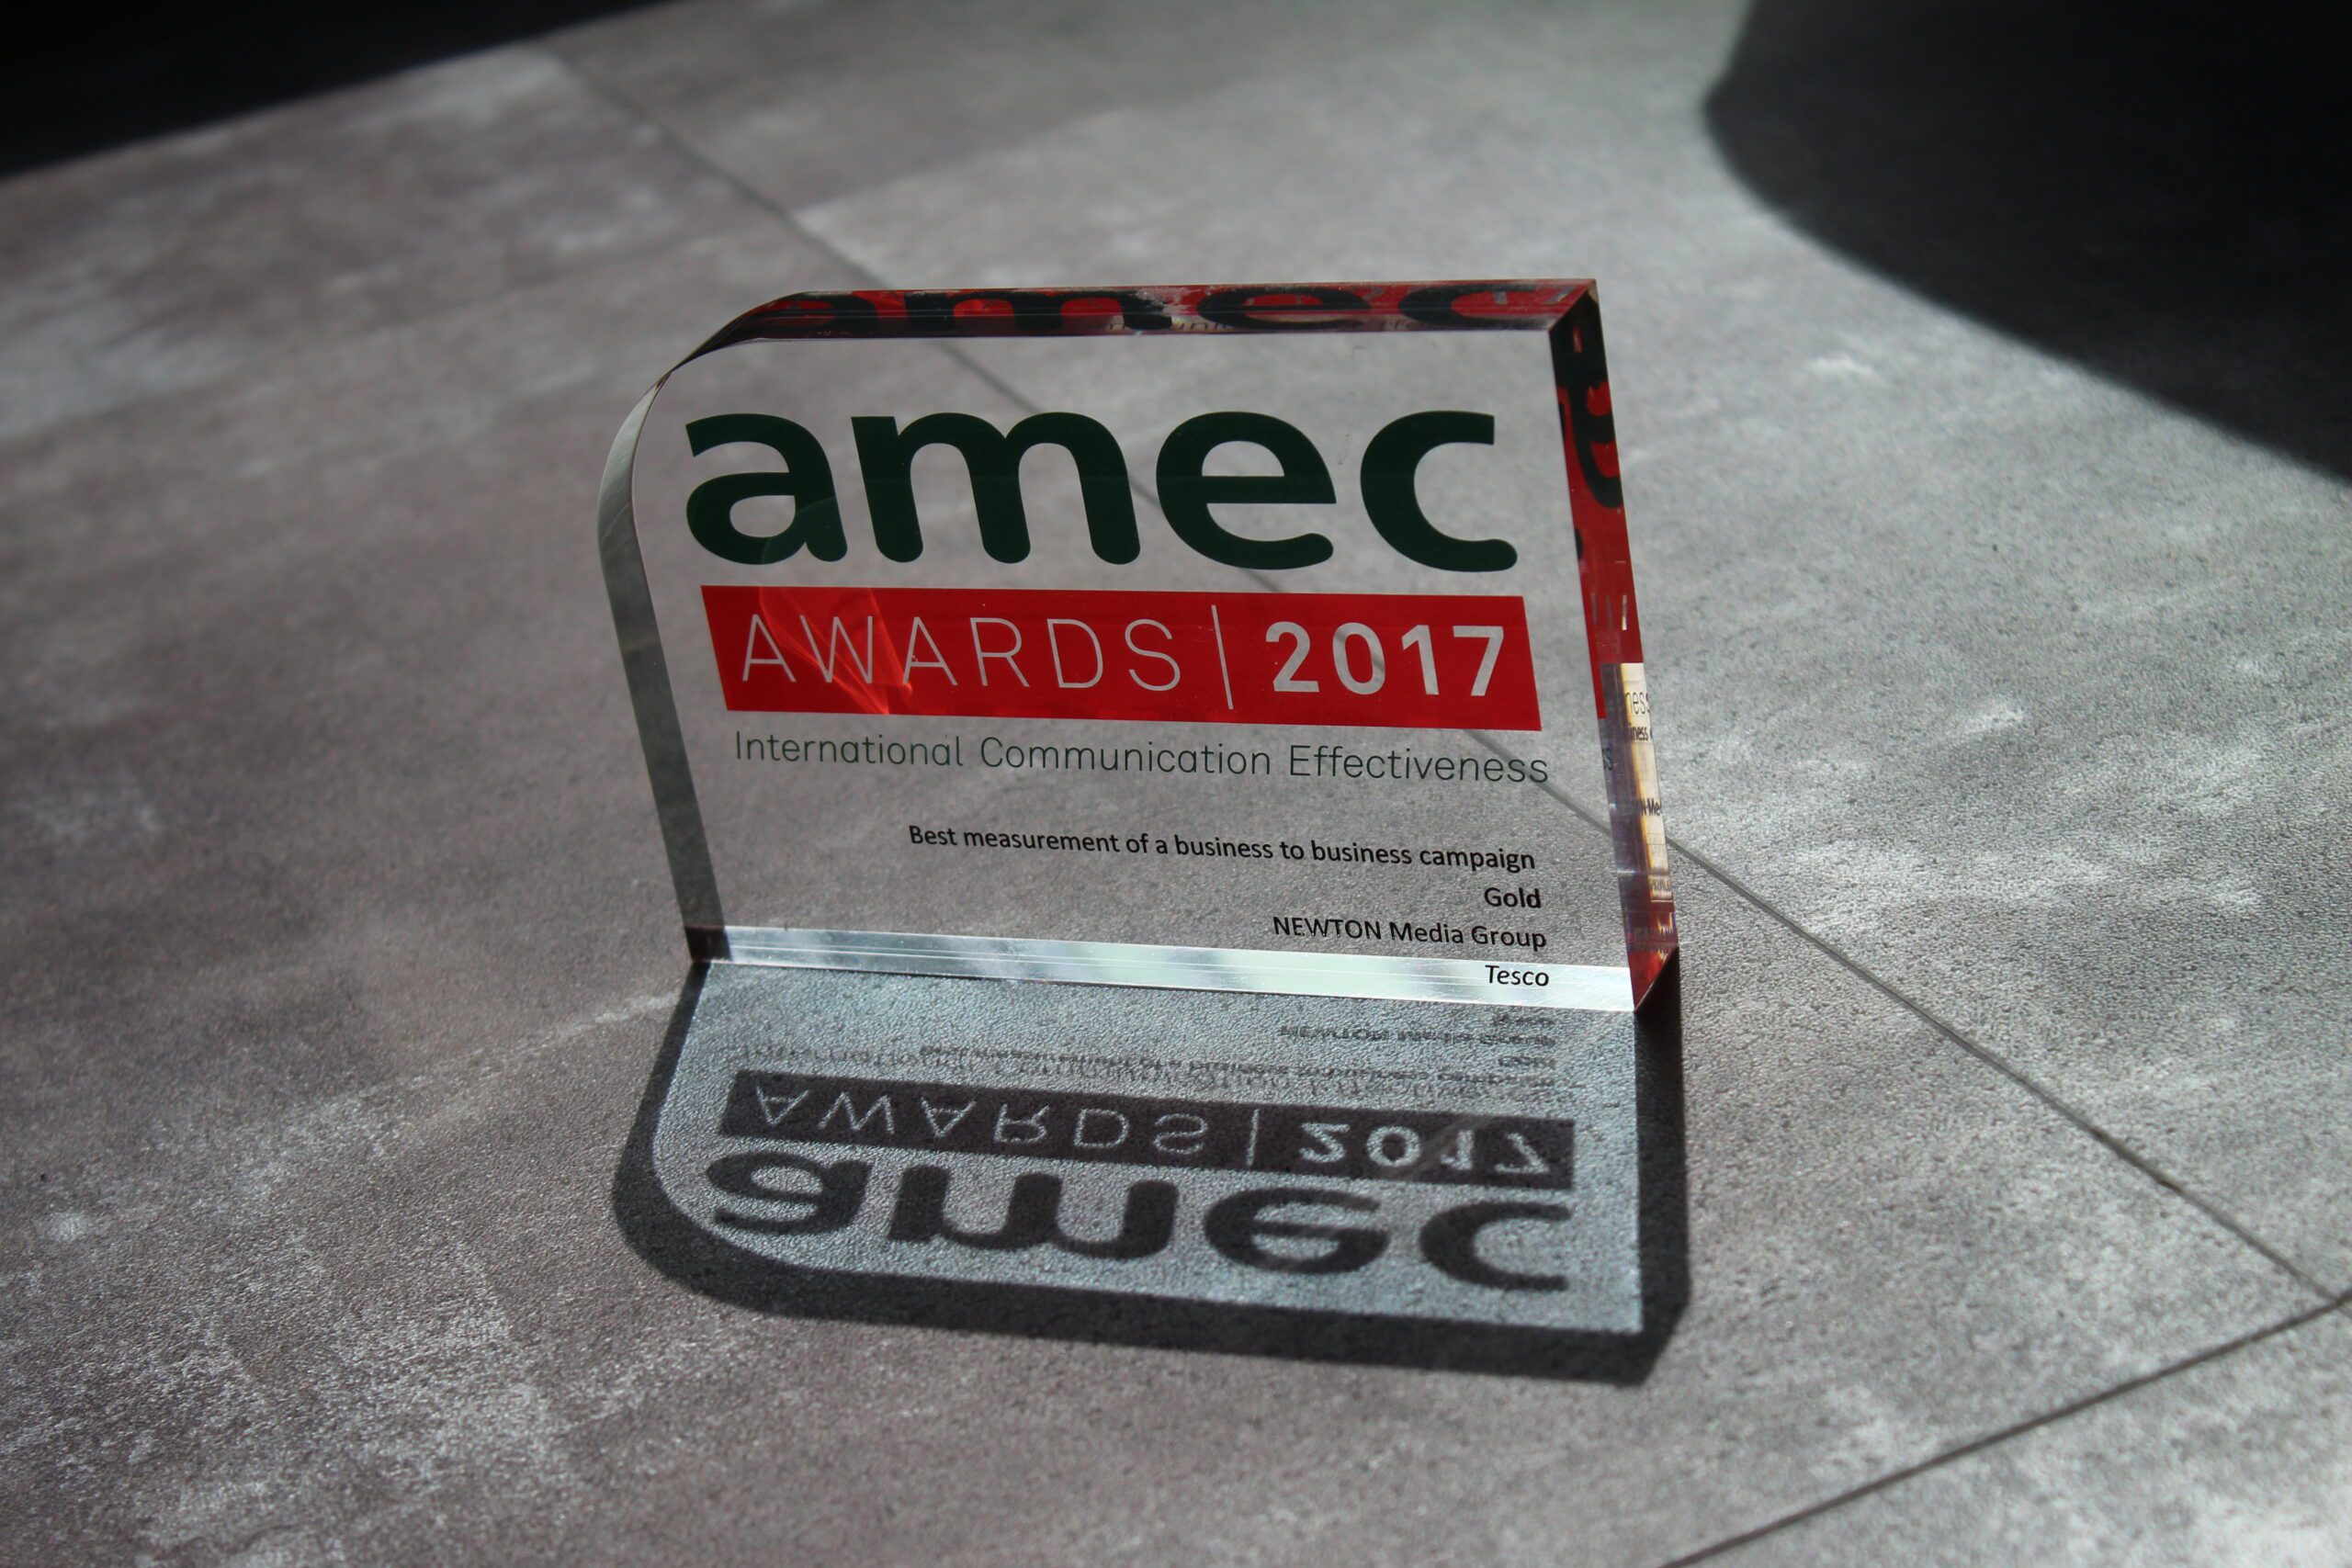 Amec award 2017